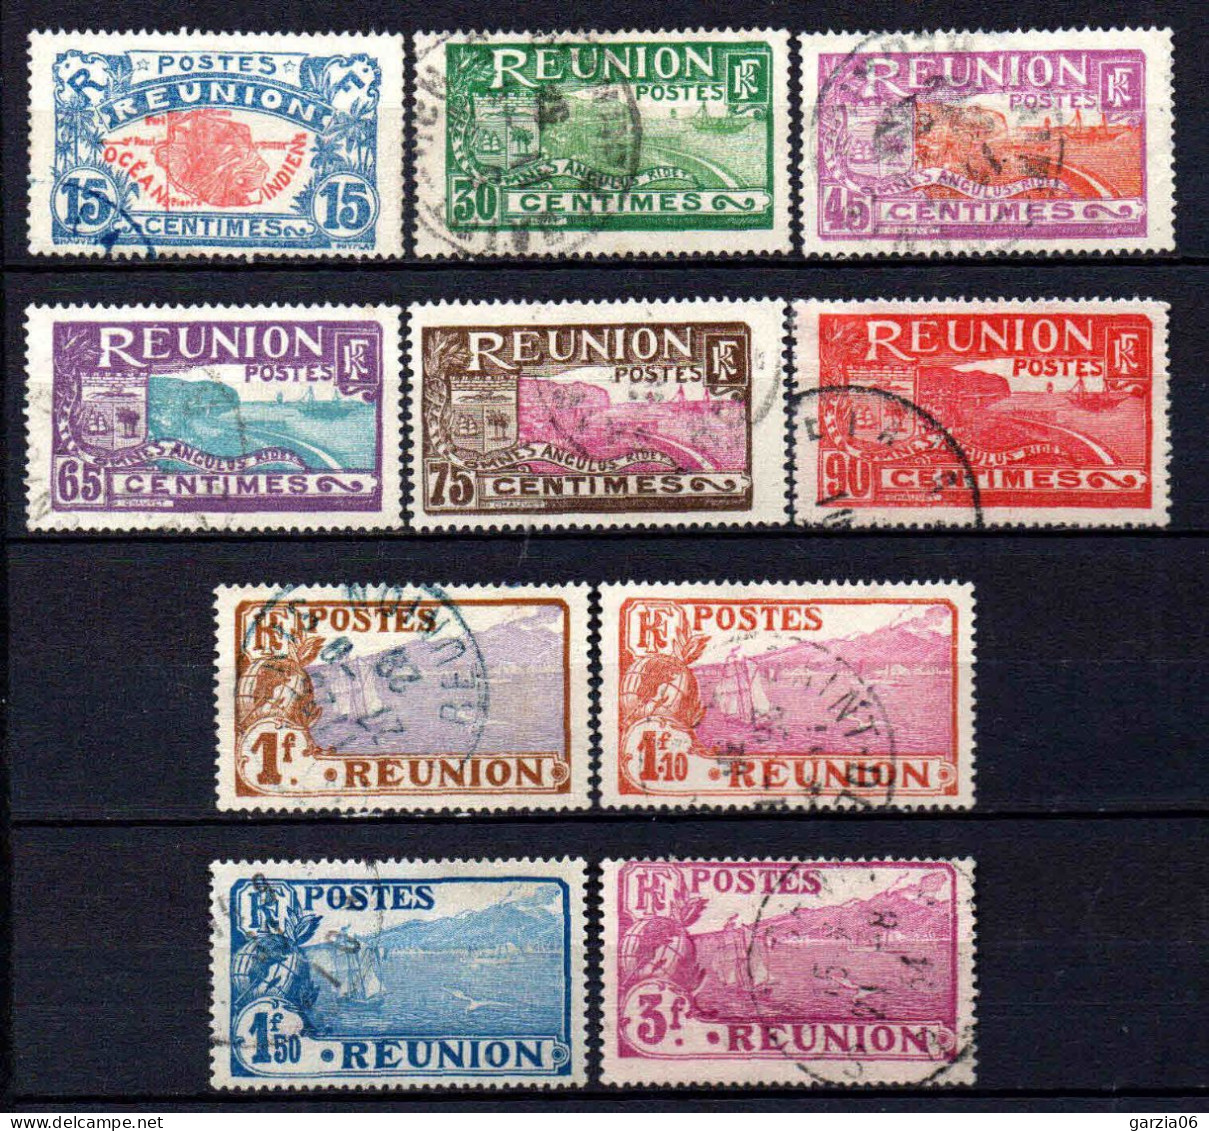 Réunion - 1928 -  Nouvelles Valeurs - N° 109 à 118  - Oblit - Used - Gebruikt